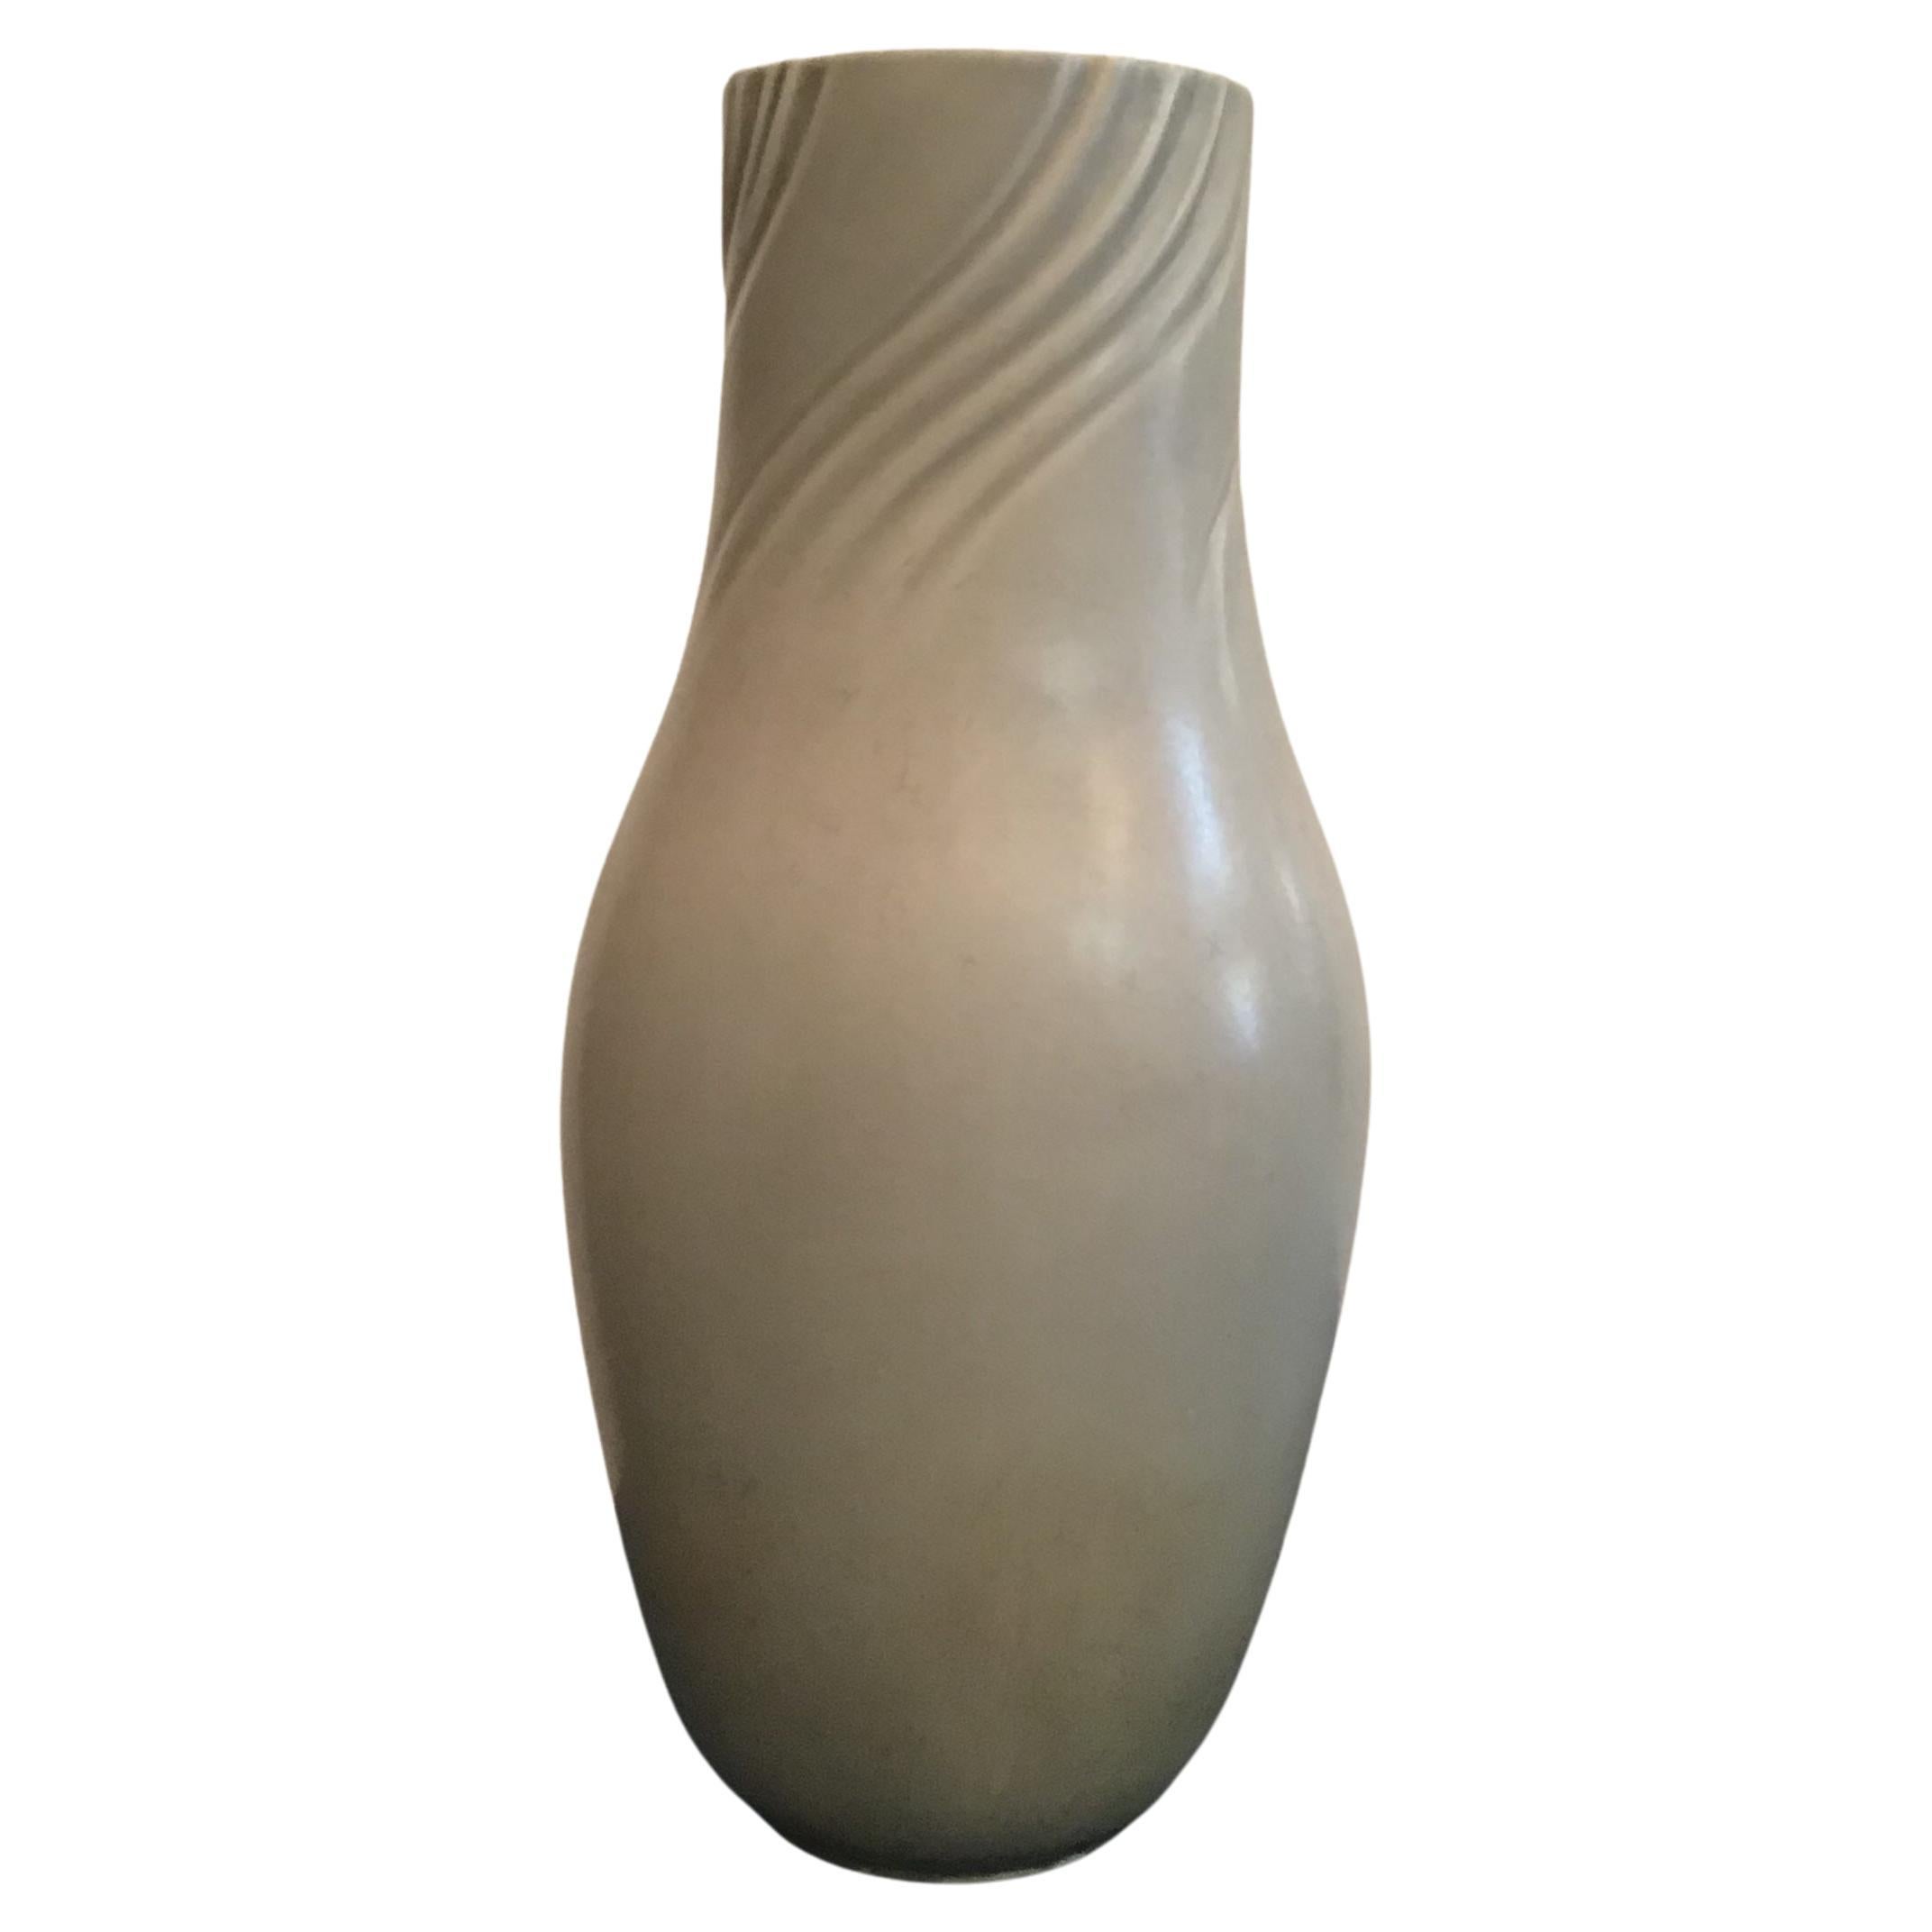 Richard Ginori “Giovanni Gariboldi Vase Ceramic 1950 Italy